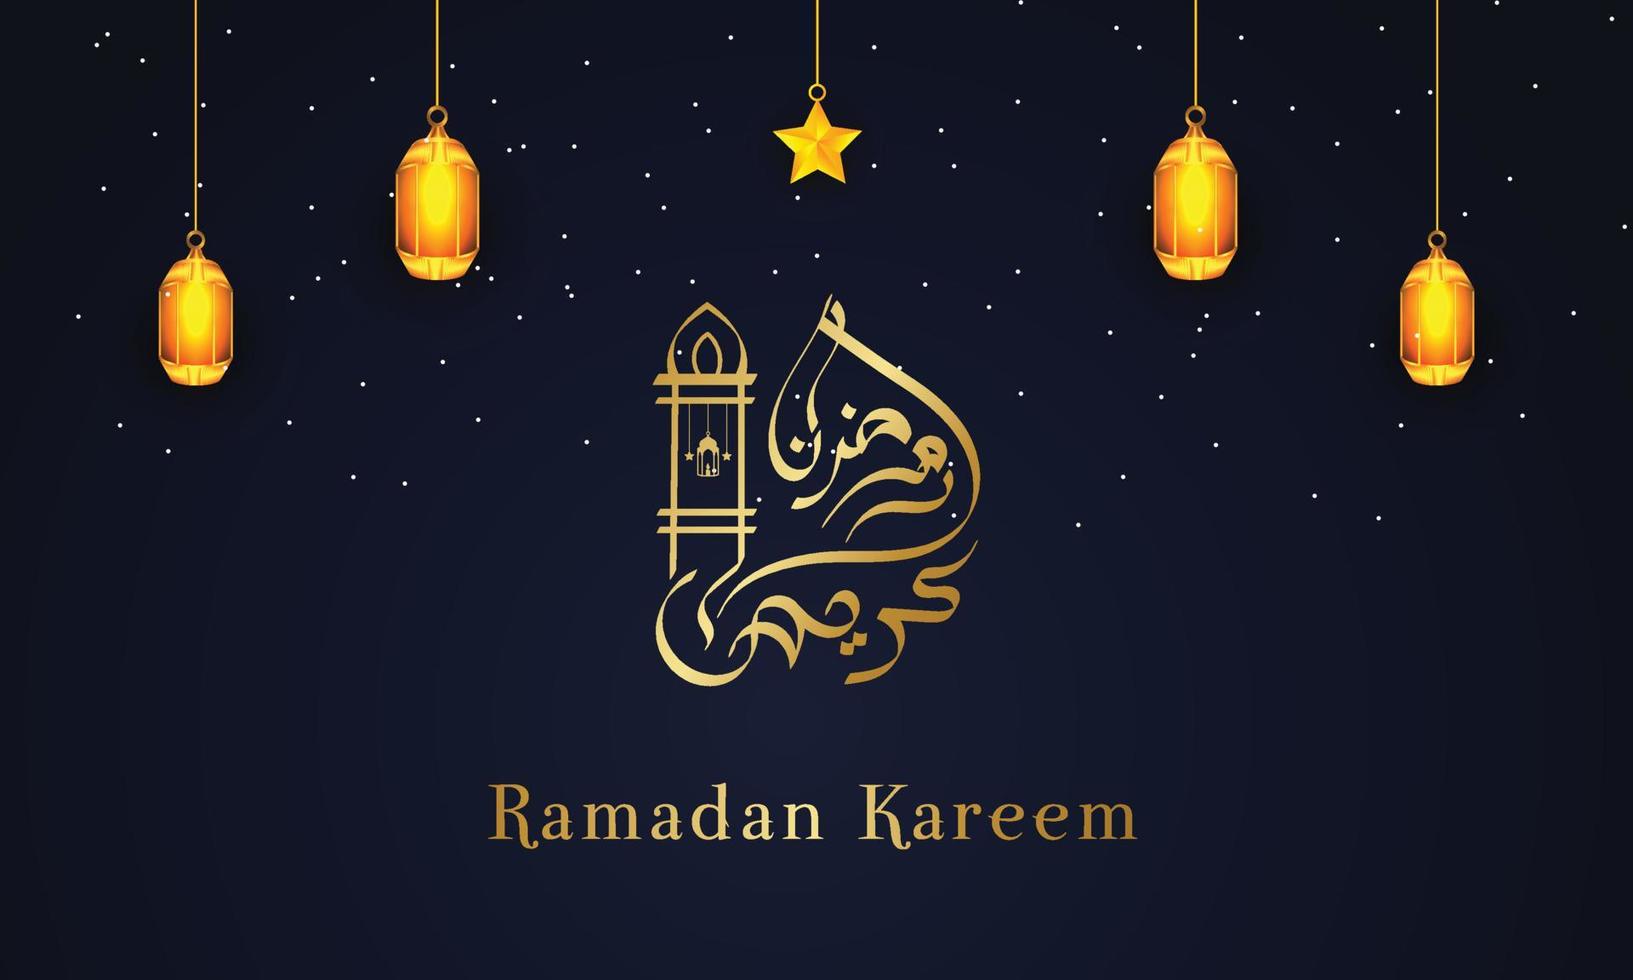 Ramadan kareem groeten Islamitisch gelegenheid achtergrond met Arabisch kalligrafie, lantaarns, ster, sier- decoratief achtergrond vector